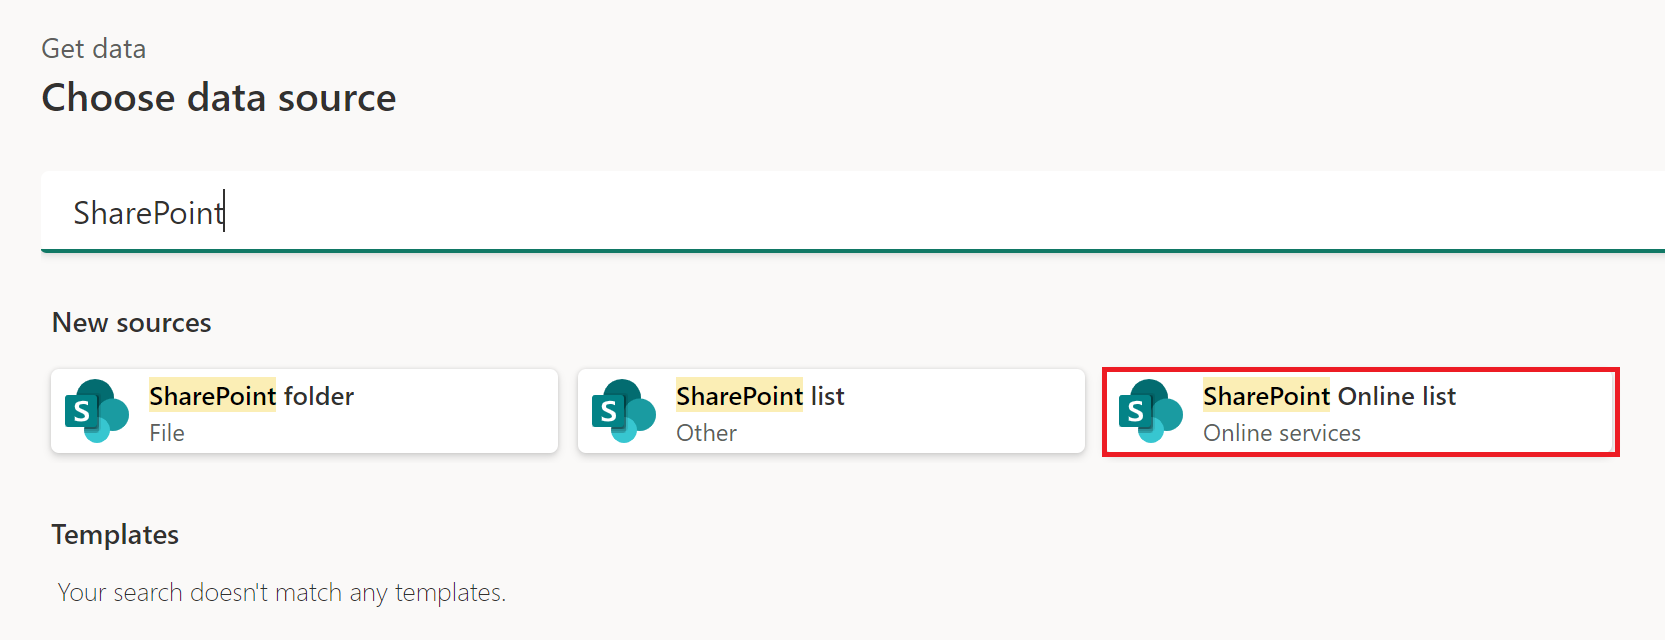 Captura de tela da janela obter dados com a lista do SharePoint Online enfatizada.